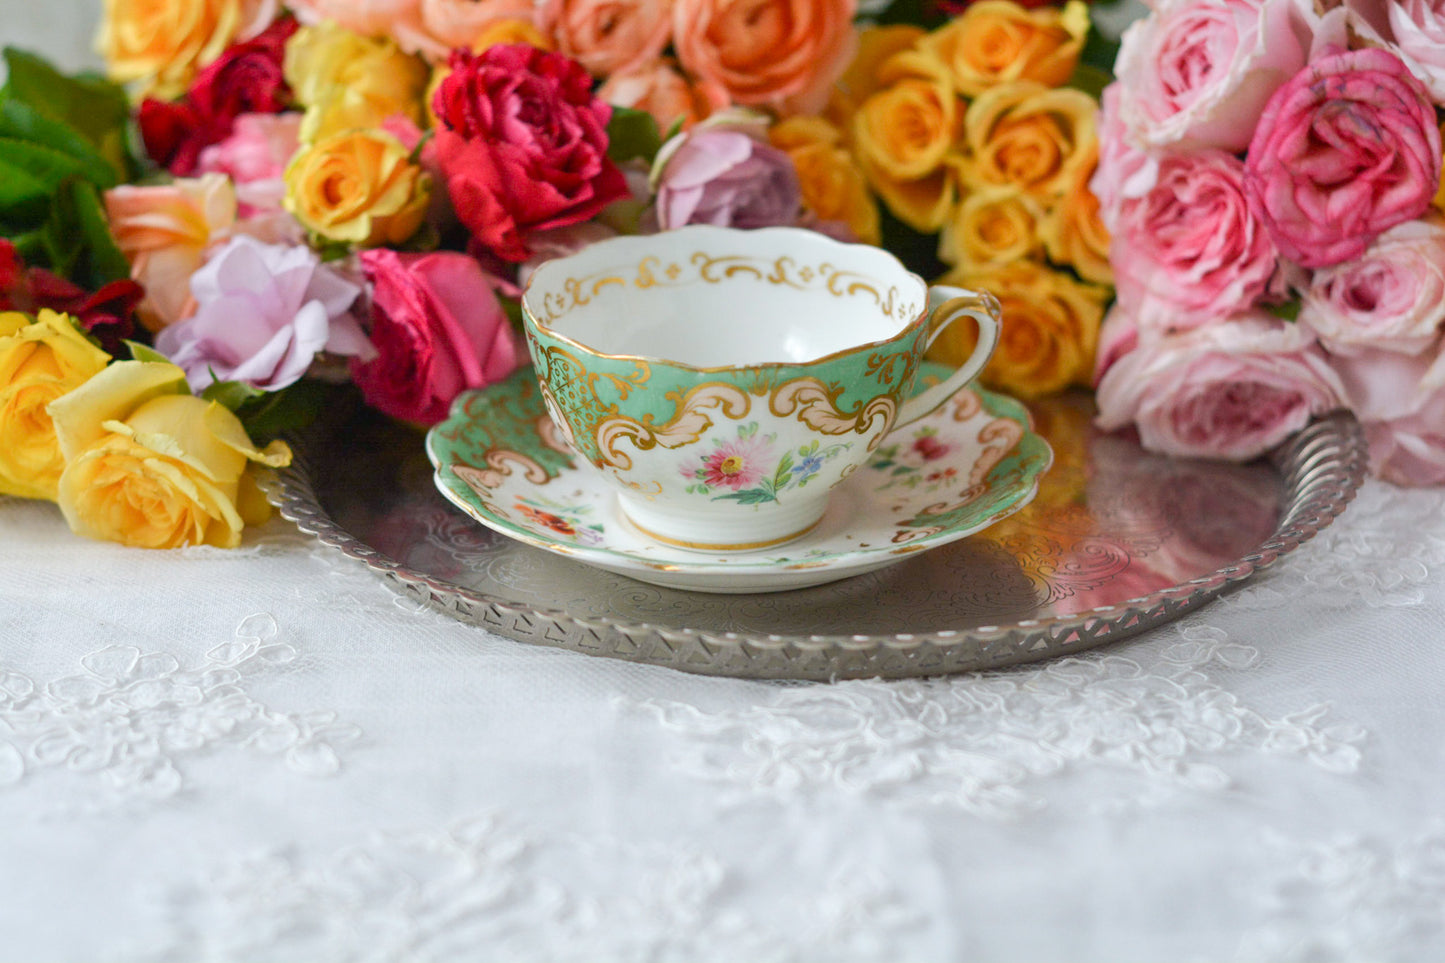 リッジウェイのFoliage Shapeのカップ&ソーサー。可愛らしいハンドルにハンドペイントで描かれた花々が描かれています。１９世紀に作られた貴重なアンティークカップです。